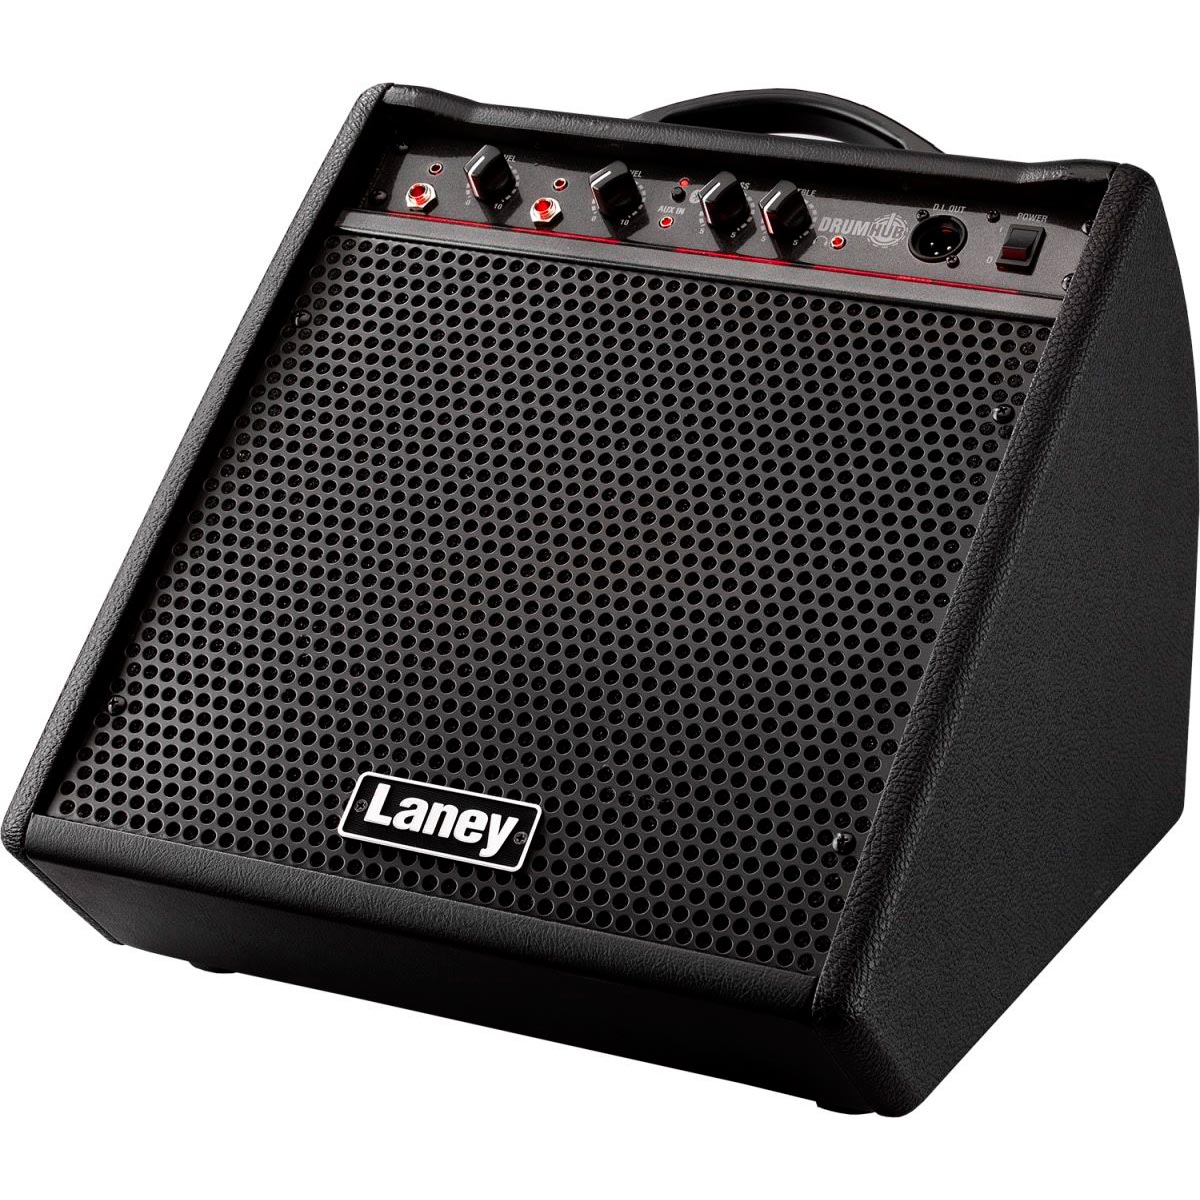 Laney DH80 Drumhub - Amplificador para batería electrónica